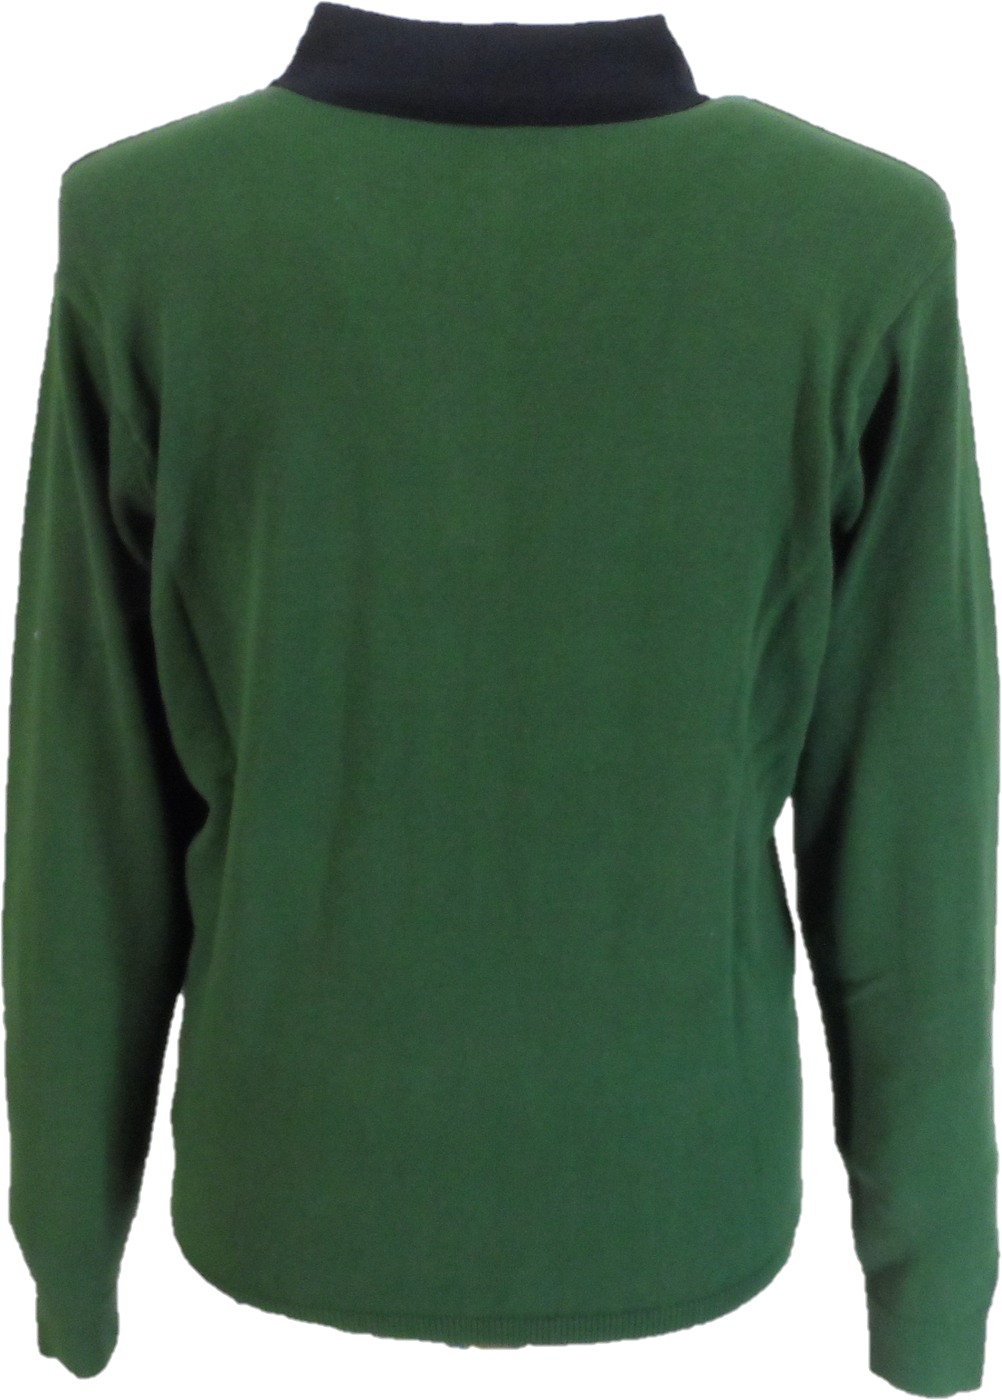 Gabicci Herren-Strickpolohemd mit waldgrünen Rautenstreifen